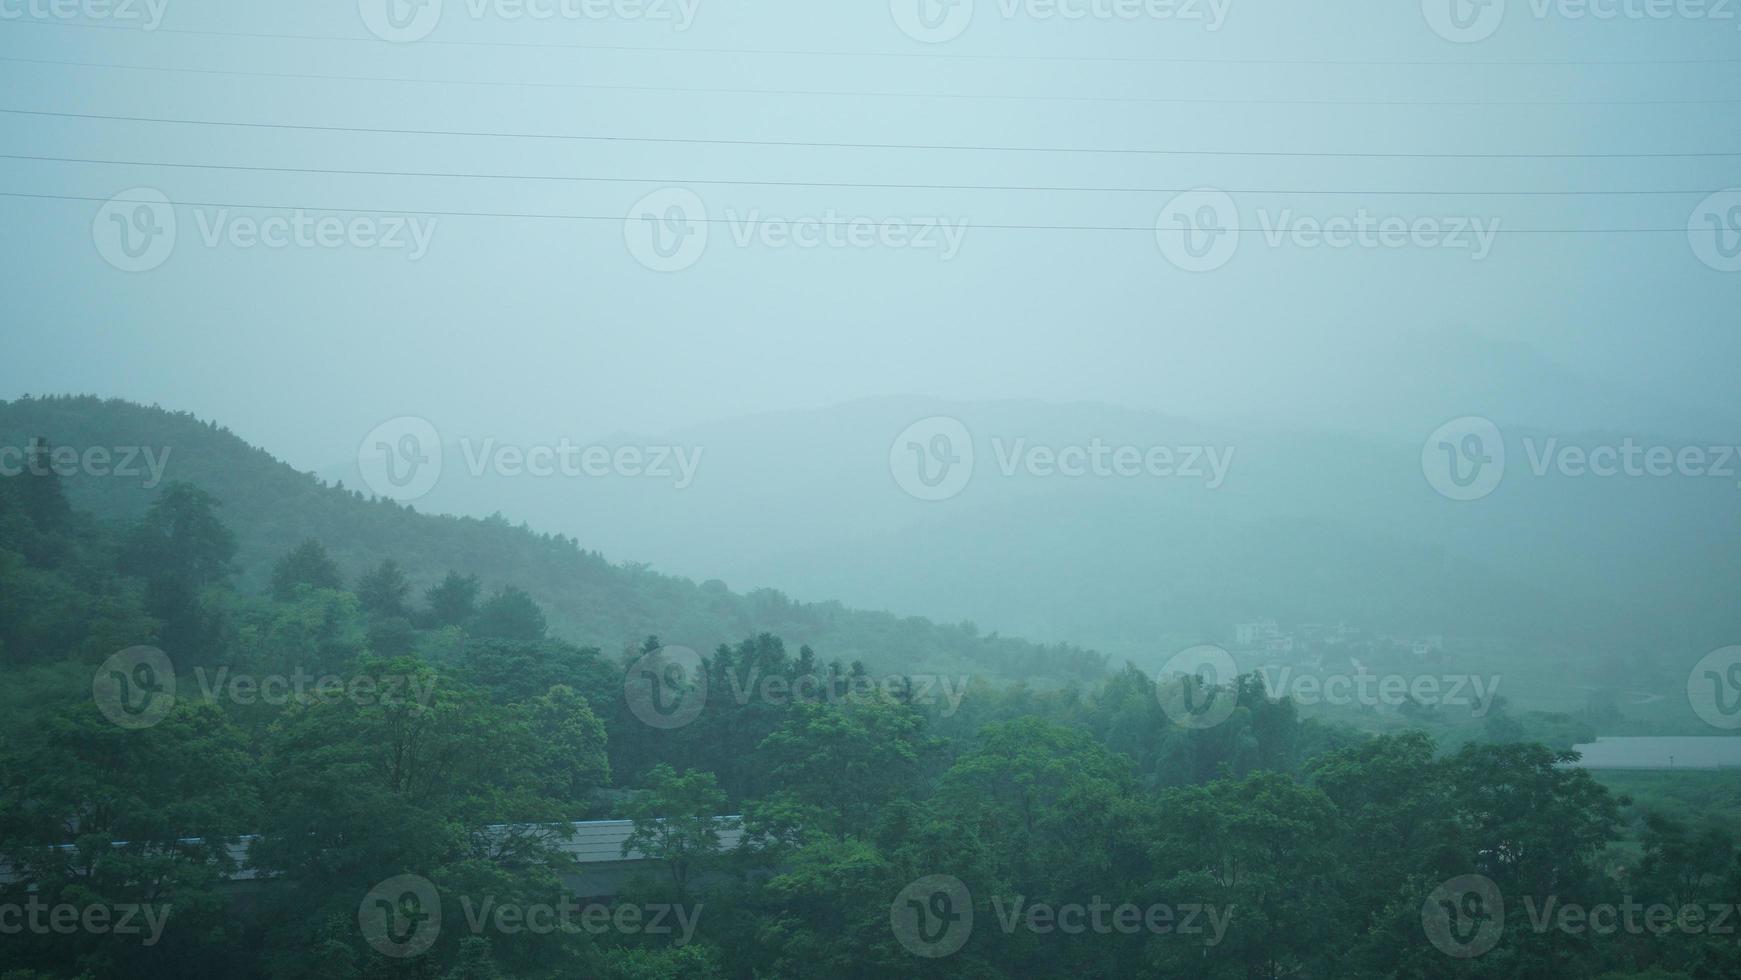 le magnifique campagne vue de le qui coule train sur le Sud de le Chine dans le pluvieux journée photo